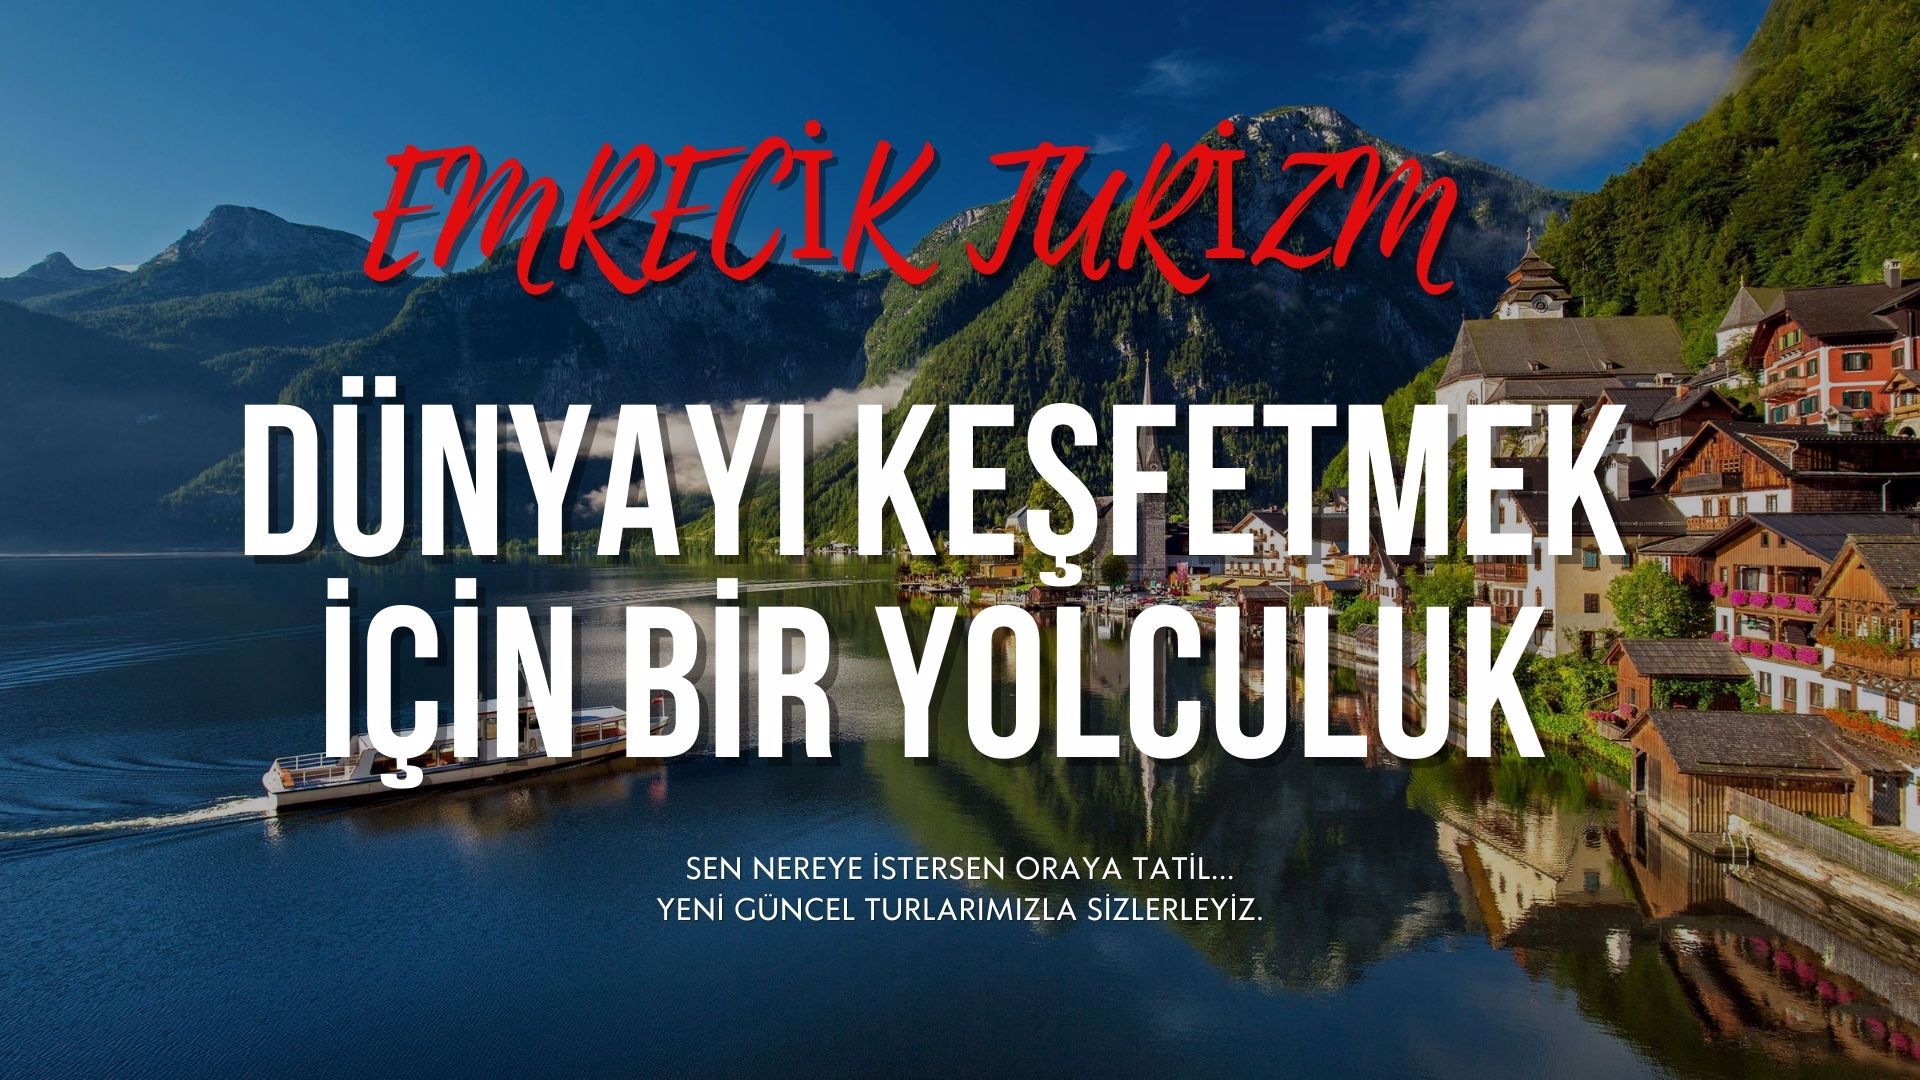 Emrecik turizm ile   lüks yurtiçi turları  Mardin, Adıyaman, Şanlıurfa tüm Türkiye  her bütçeye uygun çözümler üreten , tercih edilen güvenilir acente ile yeni keşifler  edineceksiniz..